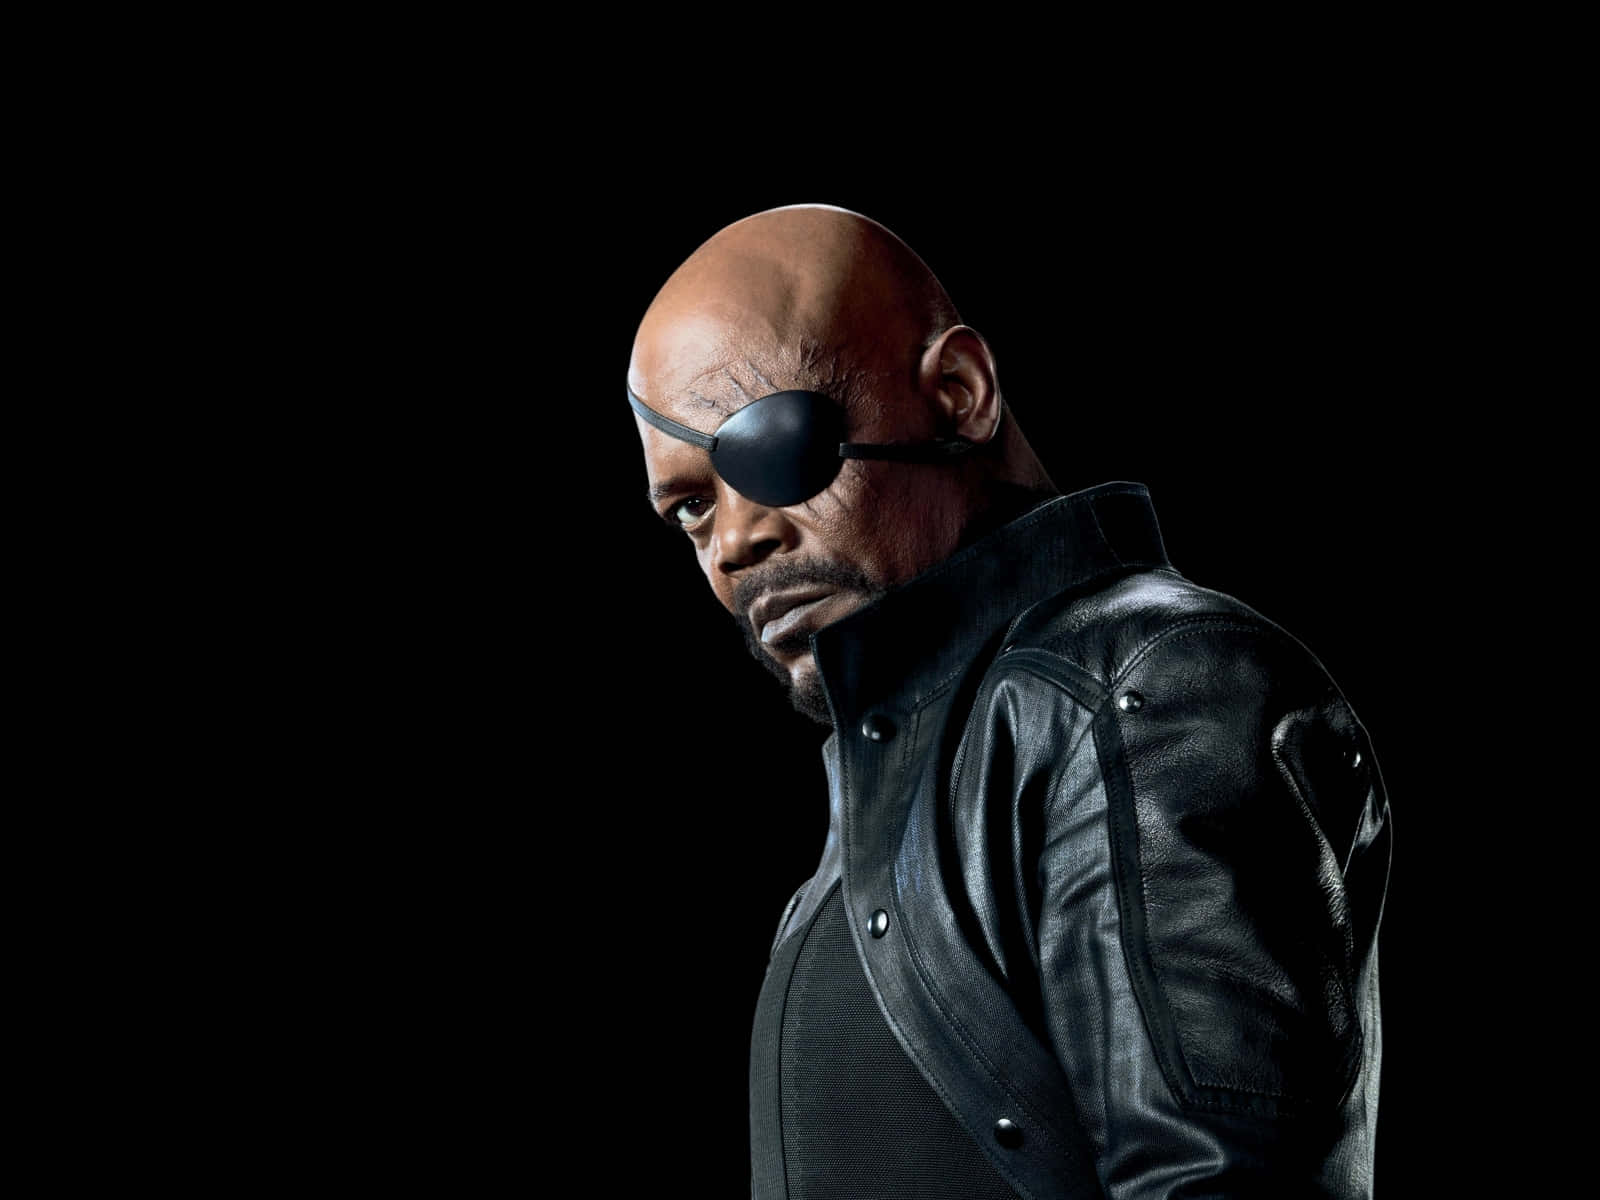 Marvel Nick Fury Samuel L. Jackson On Black Background